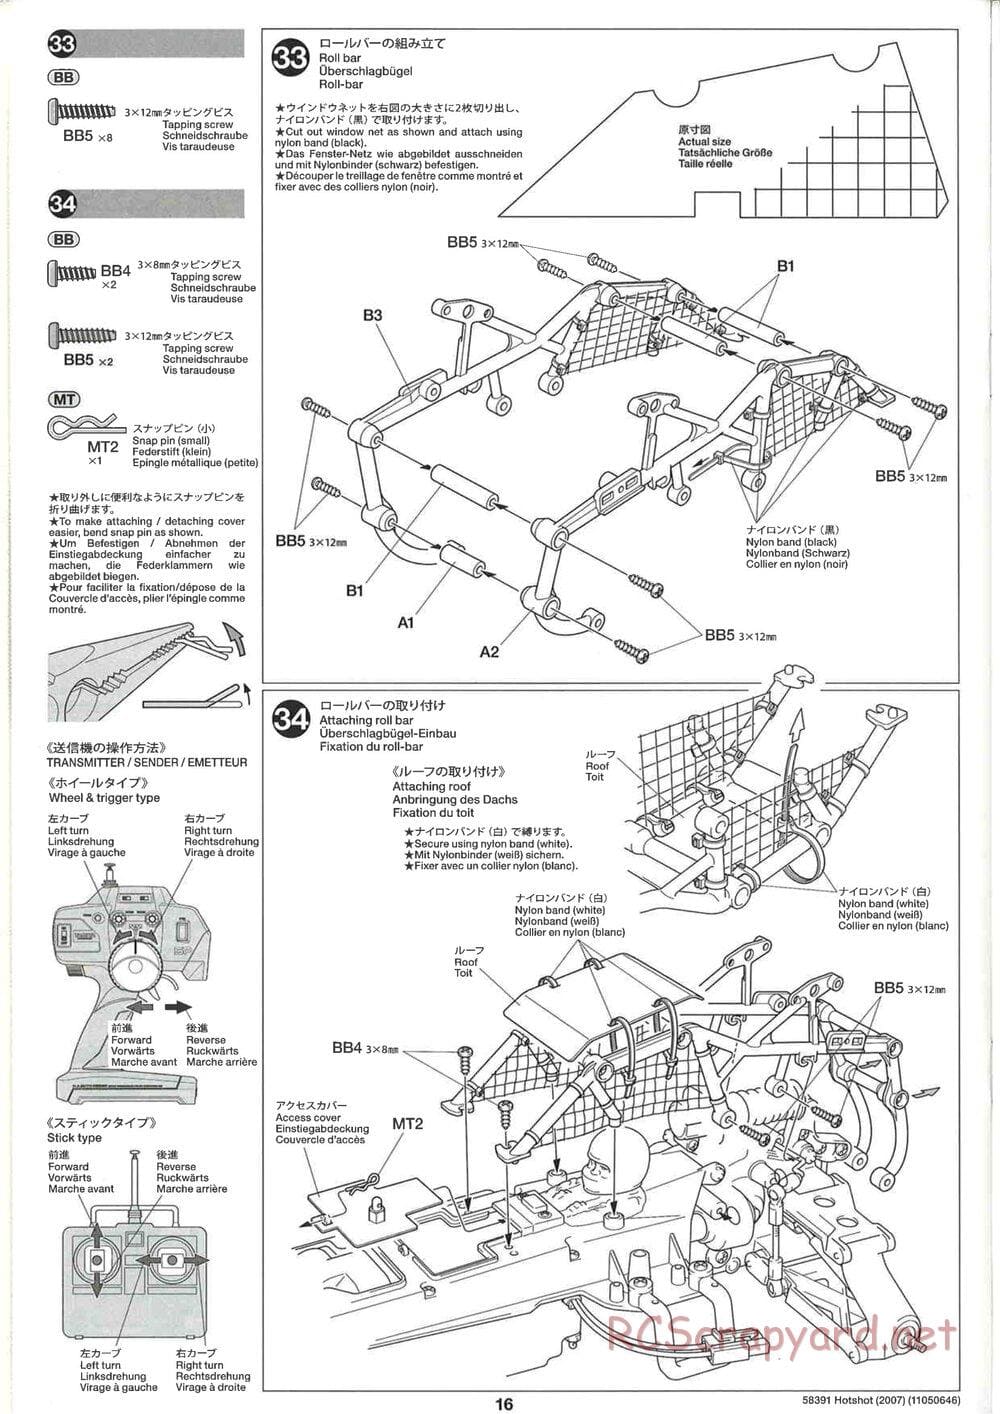 Tamiya - Hotshot - 2007 - HS Chassis - Manual - Page 16